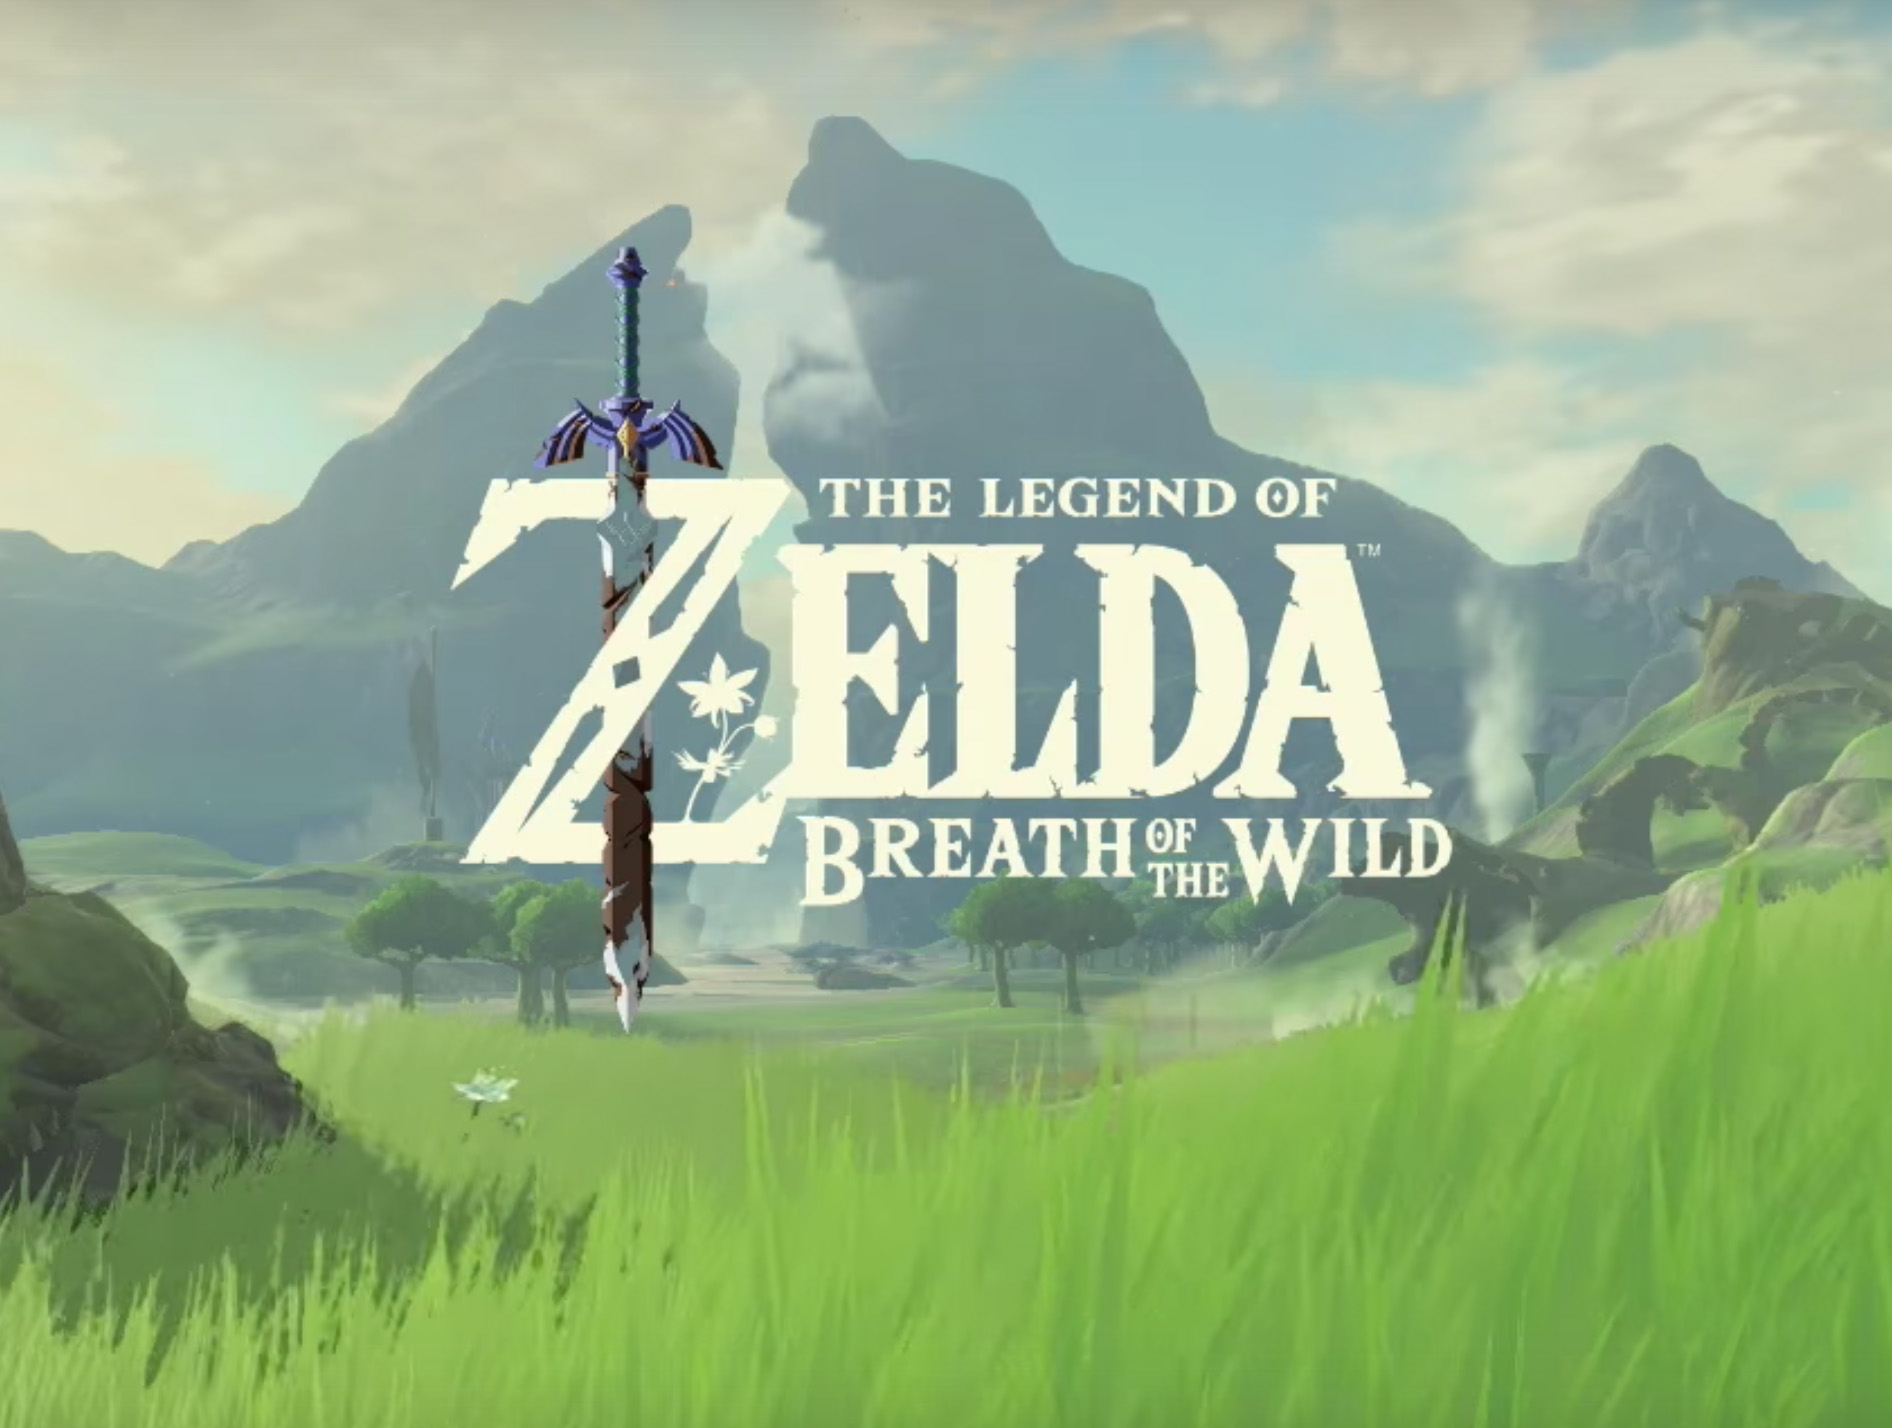 [E3 2016] Breath of the Wild is the new huge Legend of Zelda adventure [Trailer]